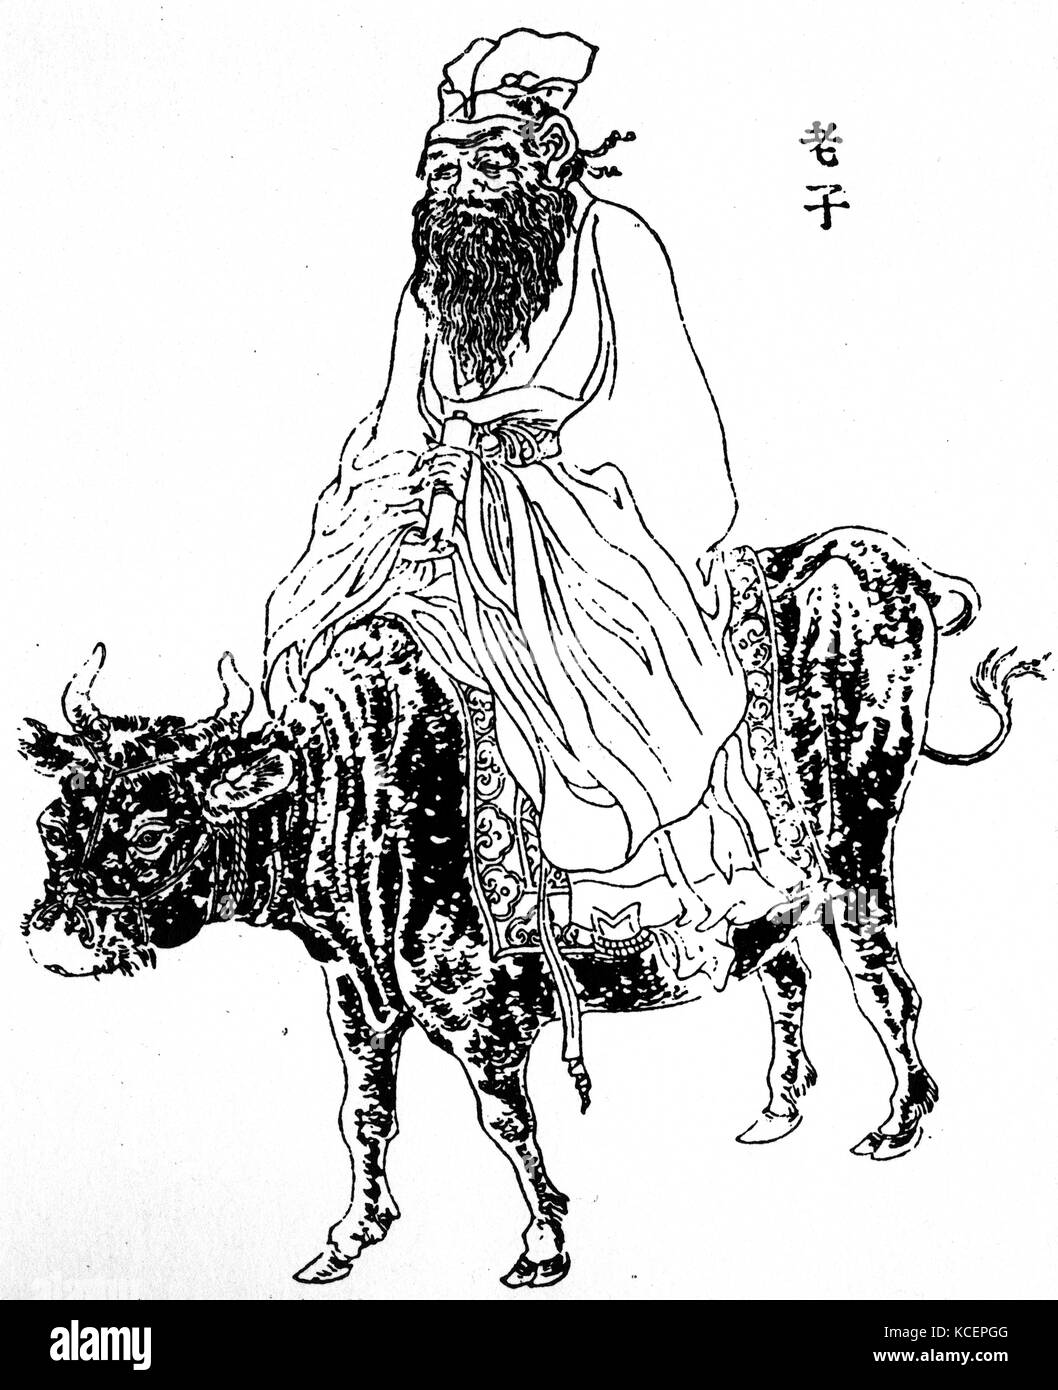 Abbildung: Darstellung von laotse (604 v. Chr. - 531 v. Chr.) eine alte chinesische Philosoph, Gründer des Taoismus und Schriftsteller. Vom 6. Jahrhundert v. Chr. Stockfoto